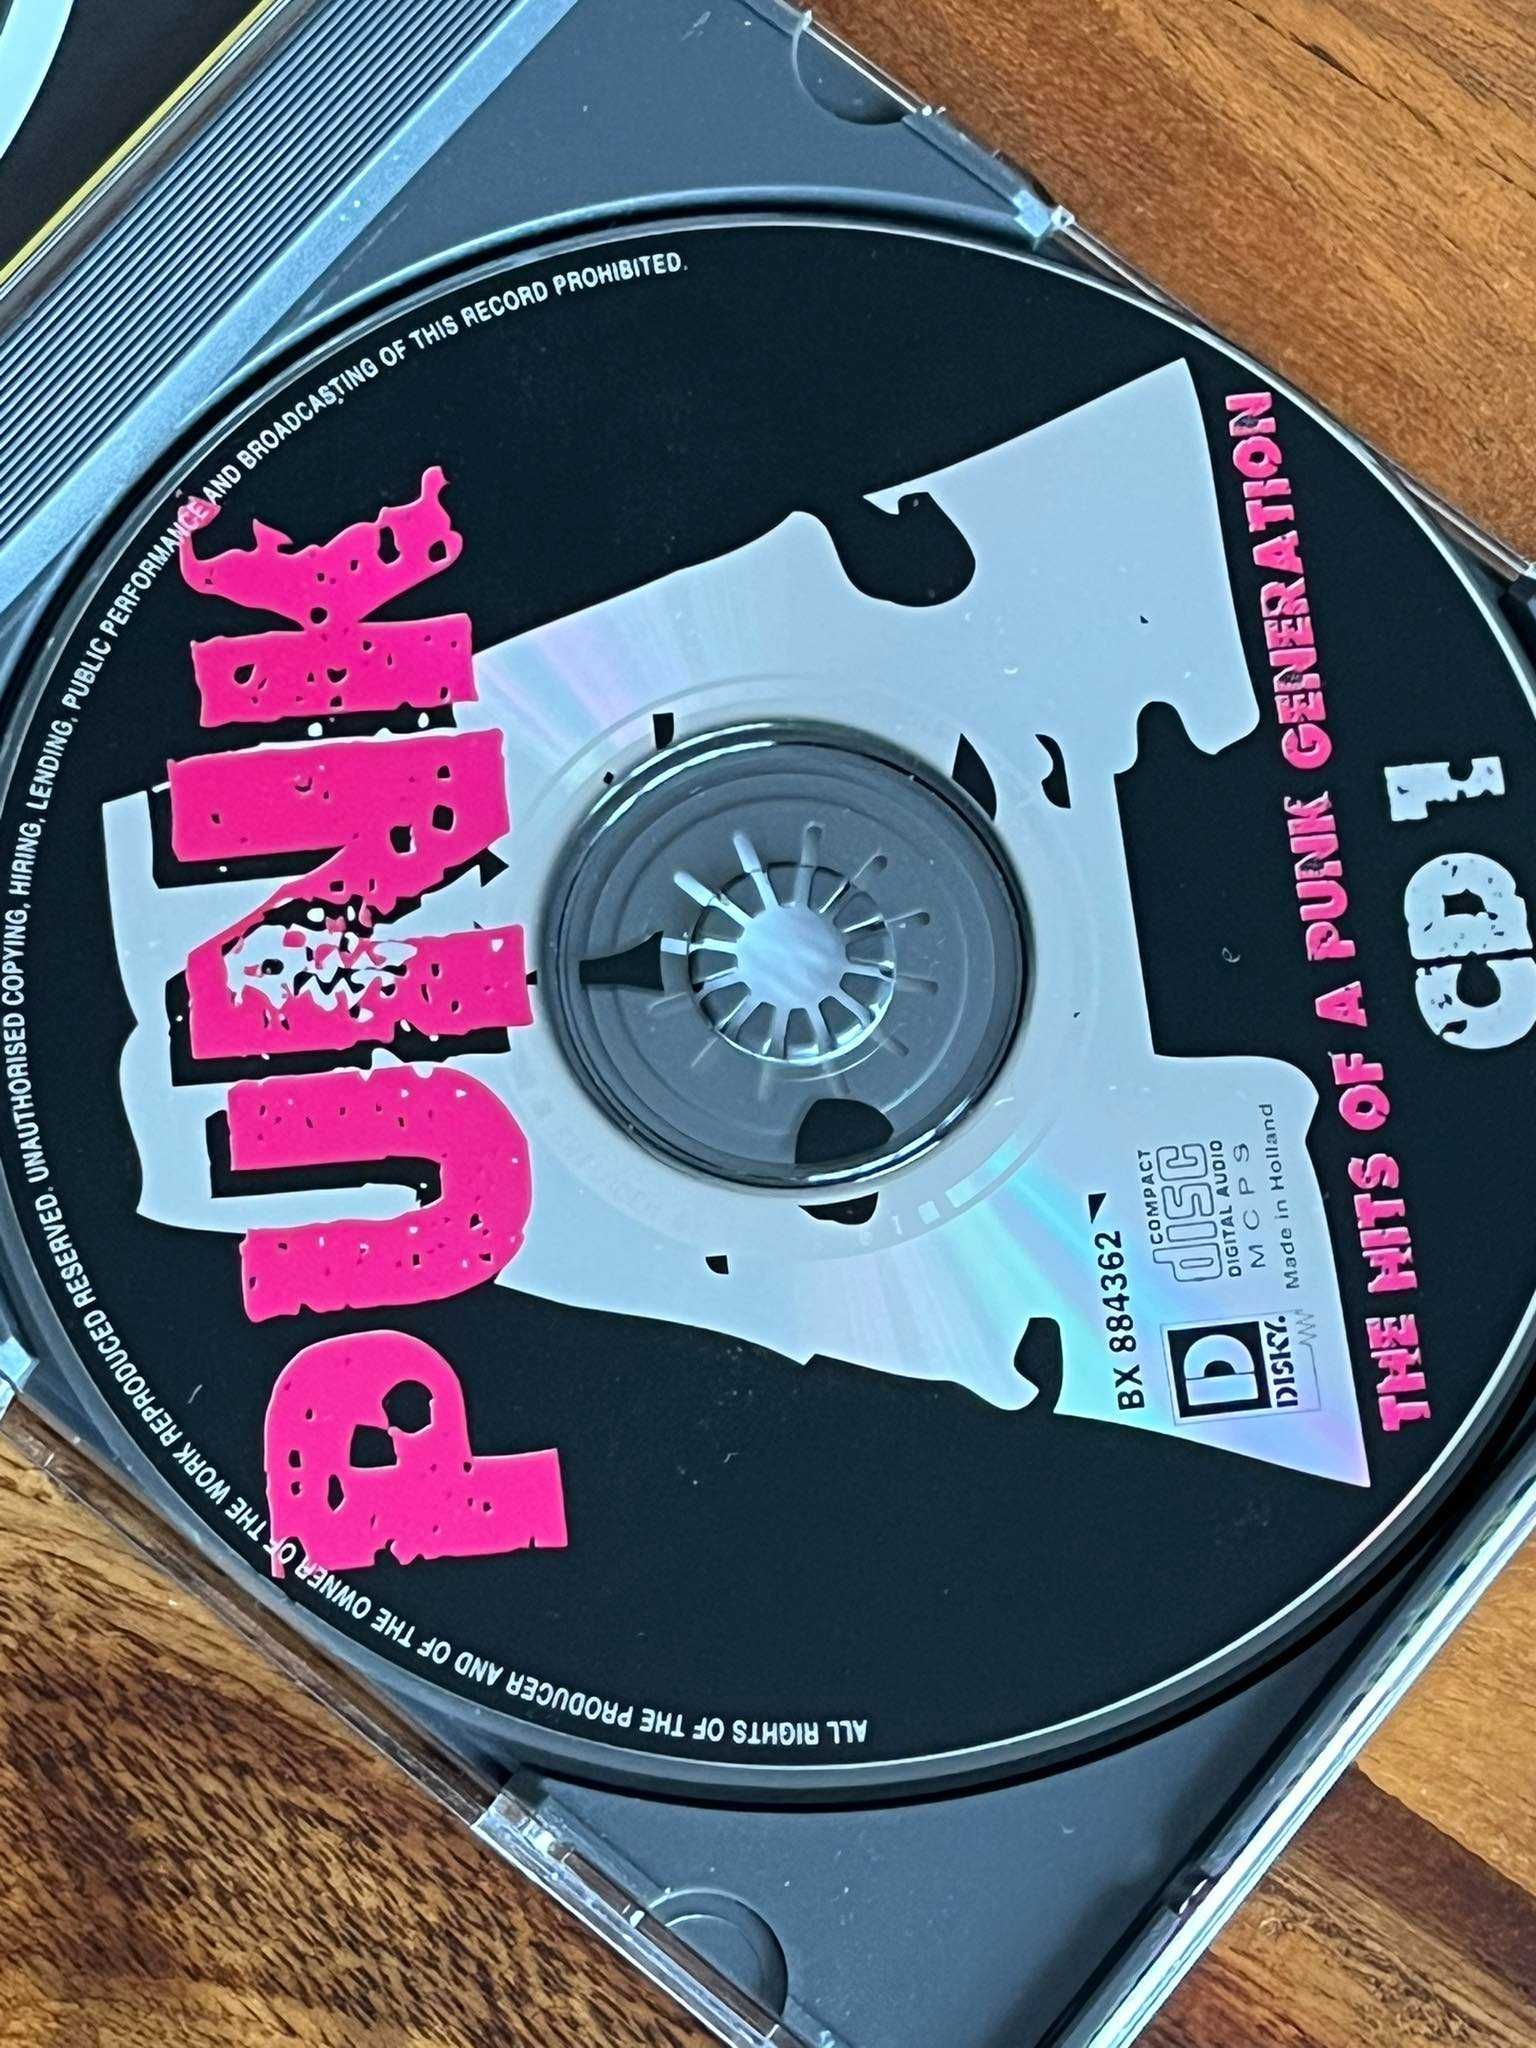 Punk -The Hits Of A Punk Generation Vol.1- CD - EX